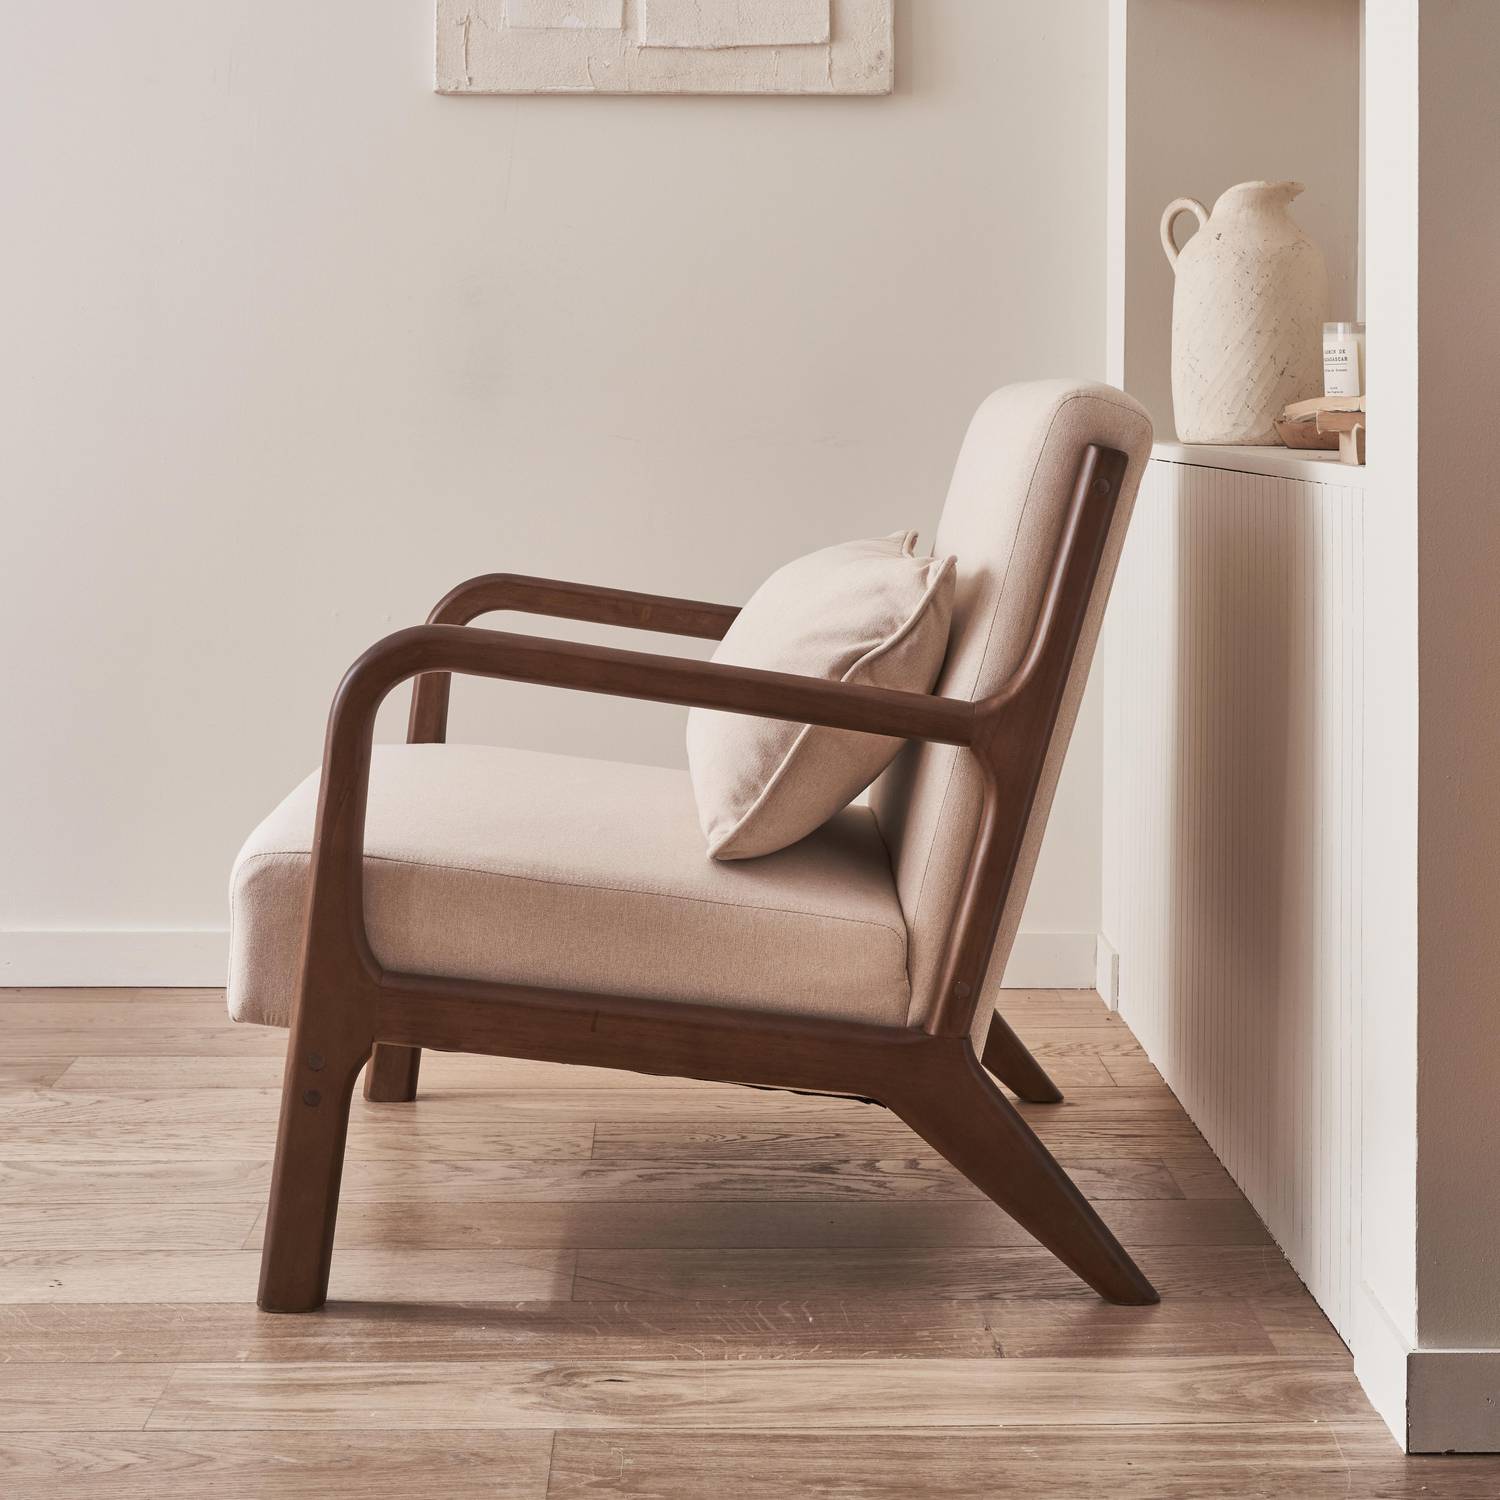 Sessel mit beigem Stoffbezug, Beine aus nussbaumfarbenem Hevea-Holz, 1-sitzig, gerade, fest, skandinavische Zirkelbeine, solides Holzgestell Photo2